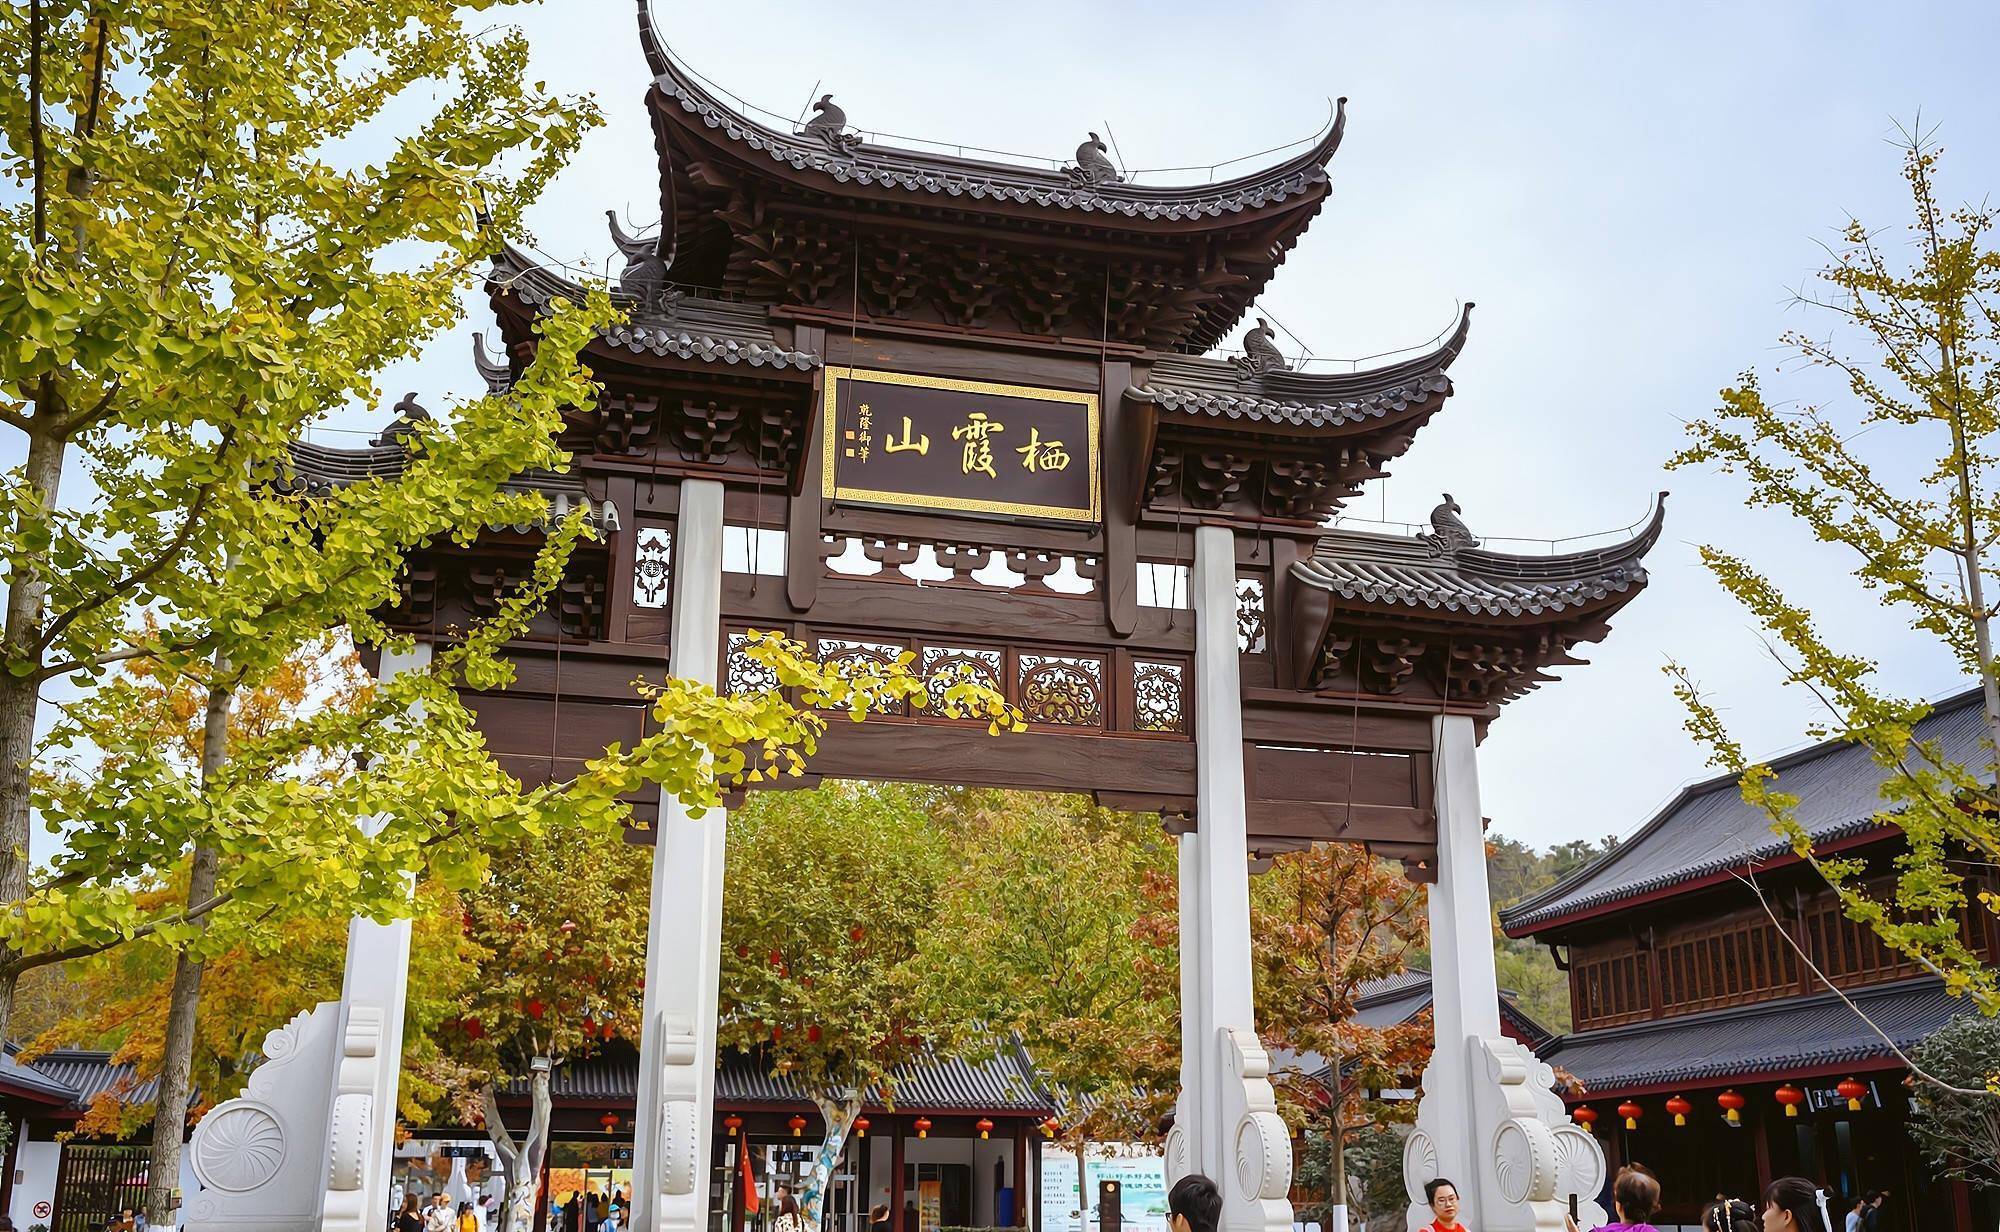 南京这座山，被誉为“金陵第一明秀山”，历史上五王十四帝曾登临